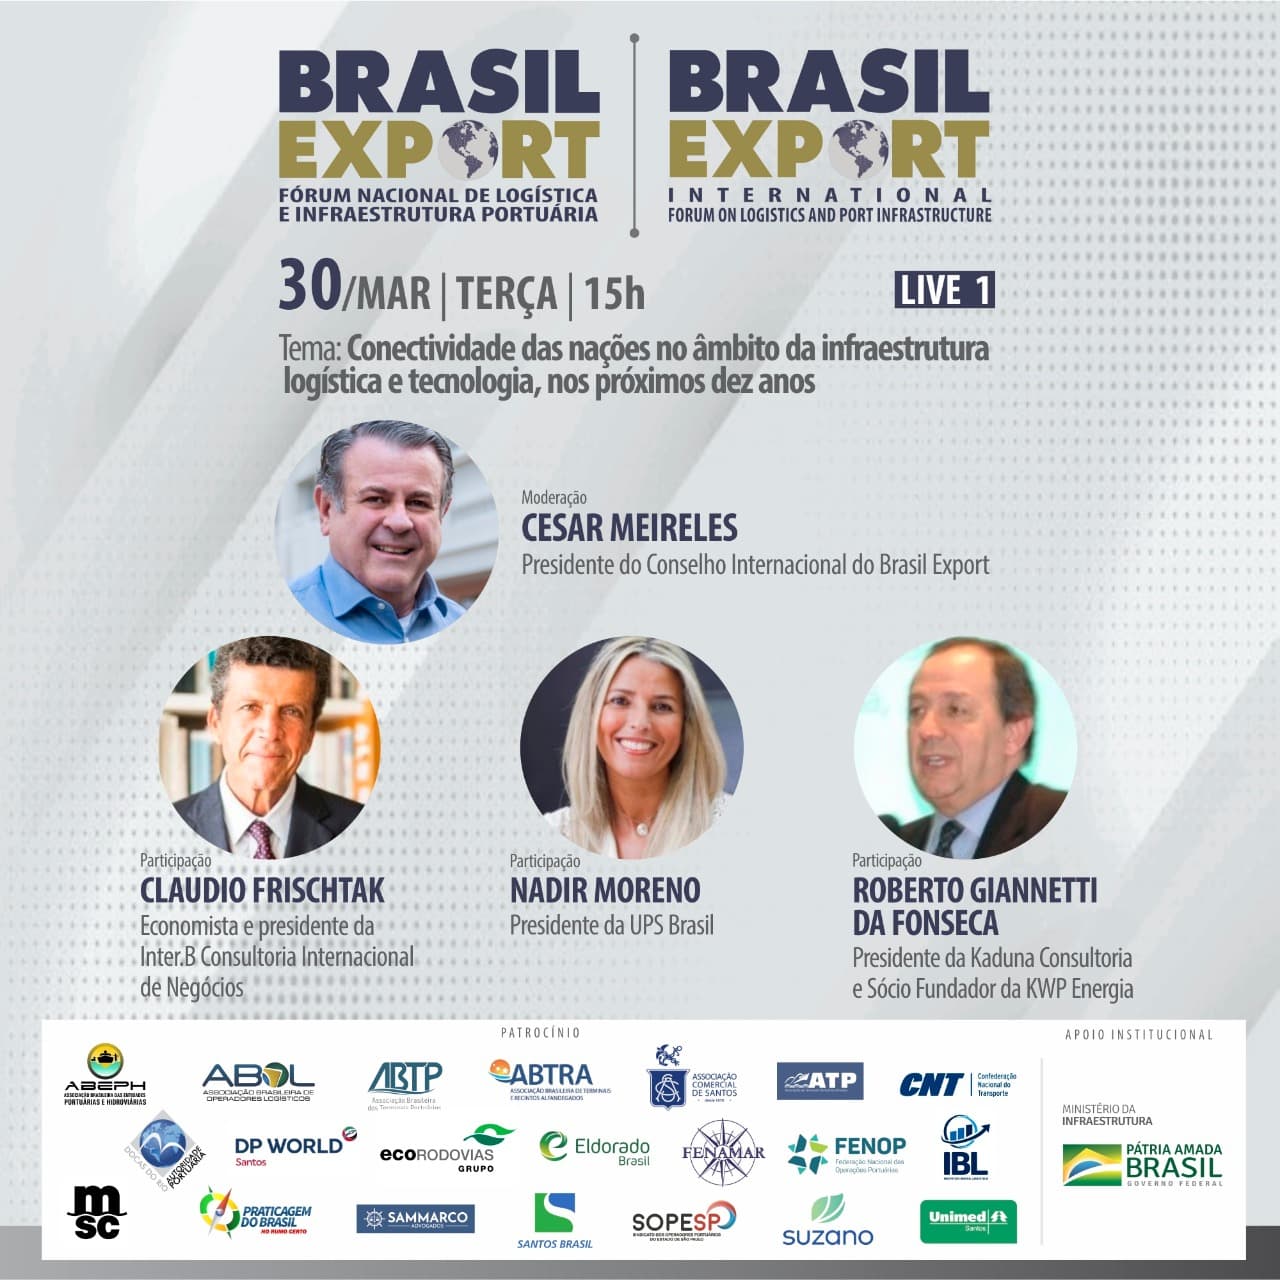  1ª live do Conselho Internacional do Brasil Export